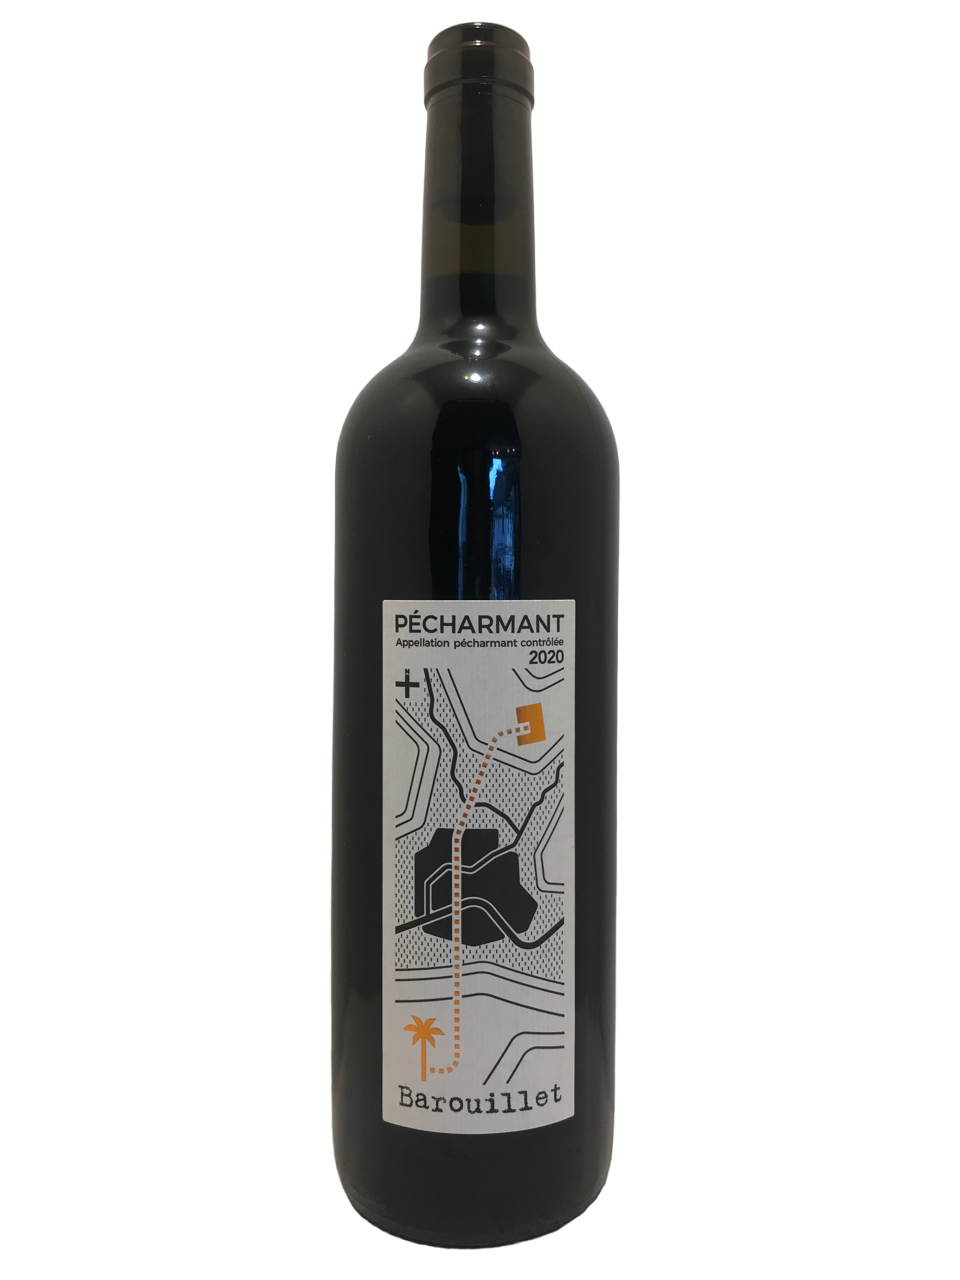 Vin du sud ouest natural win organic vin bio biodynamie nature domaine barouillet pécharmant rouge